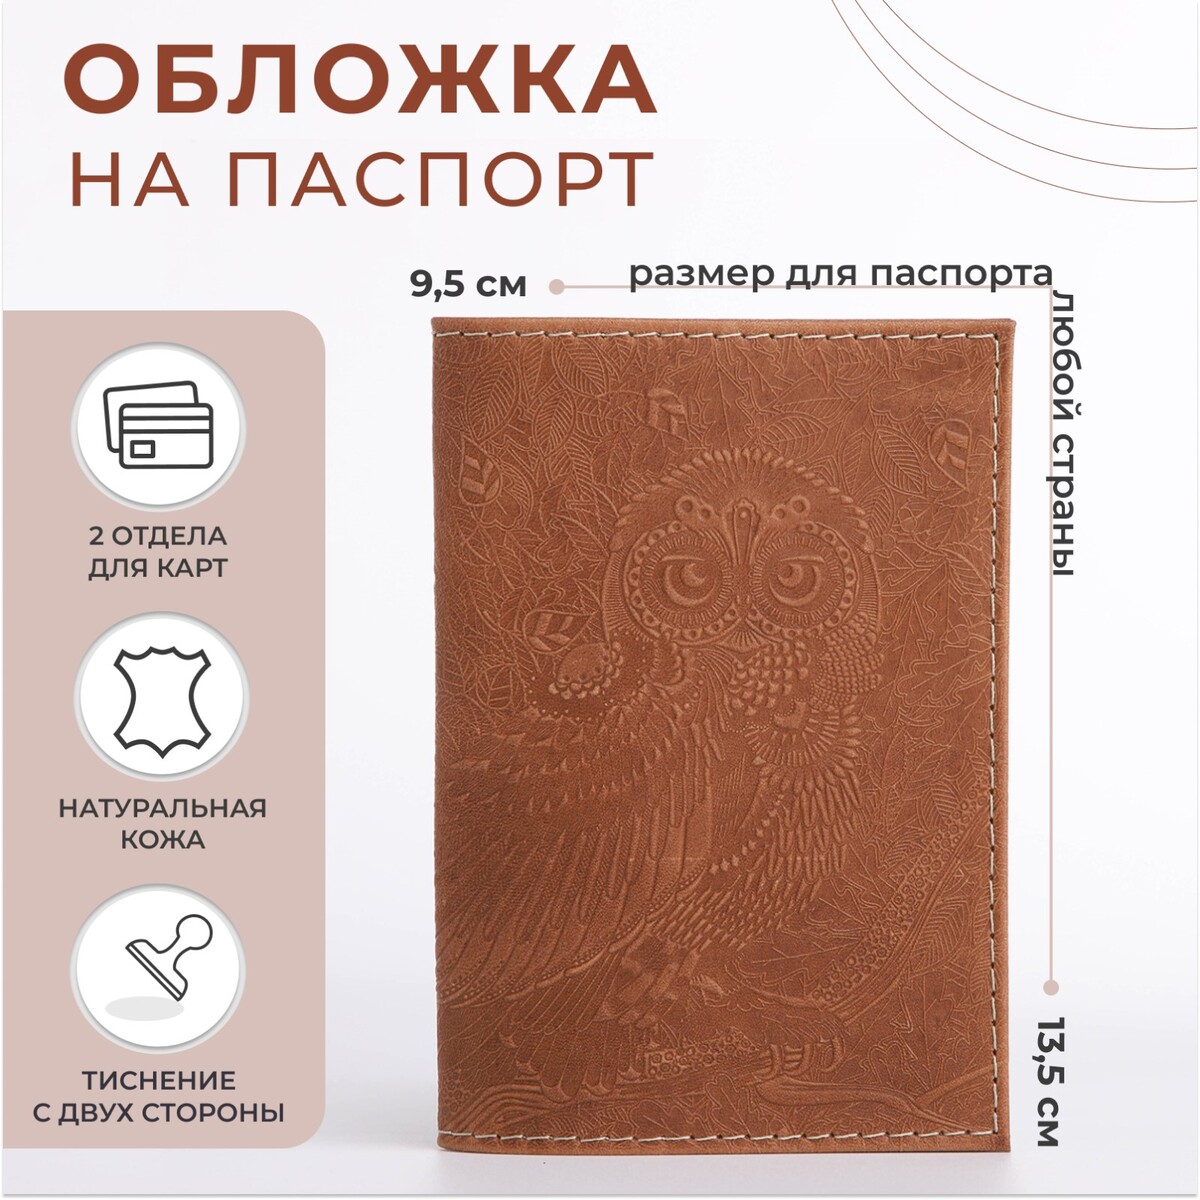 Обложка для паспорта, цвет темно-бежевый обложка для паспорта пвх оттенок кардинал